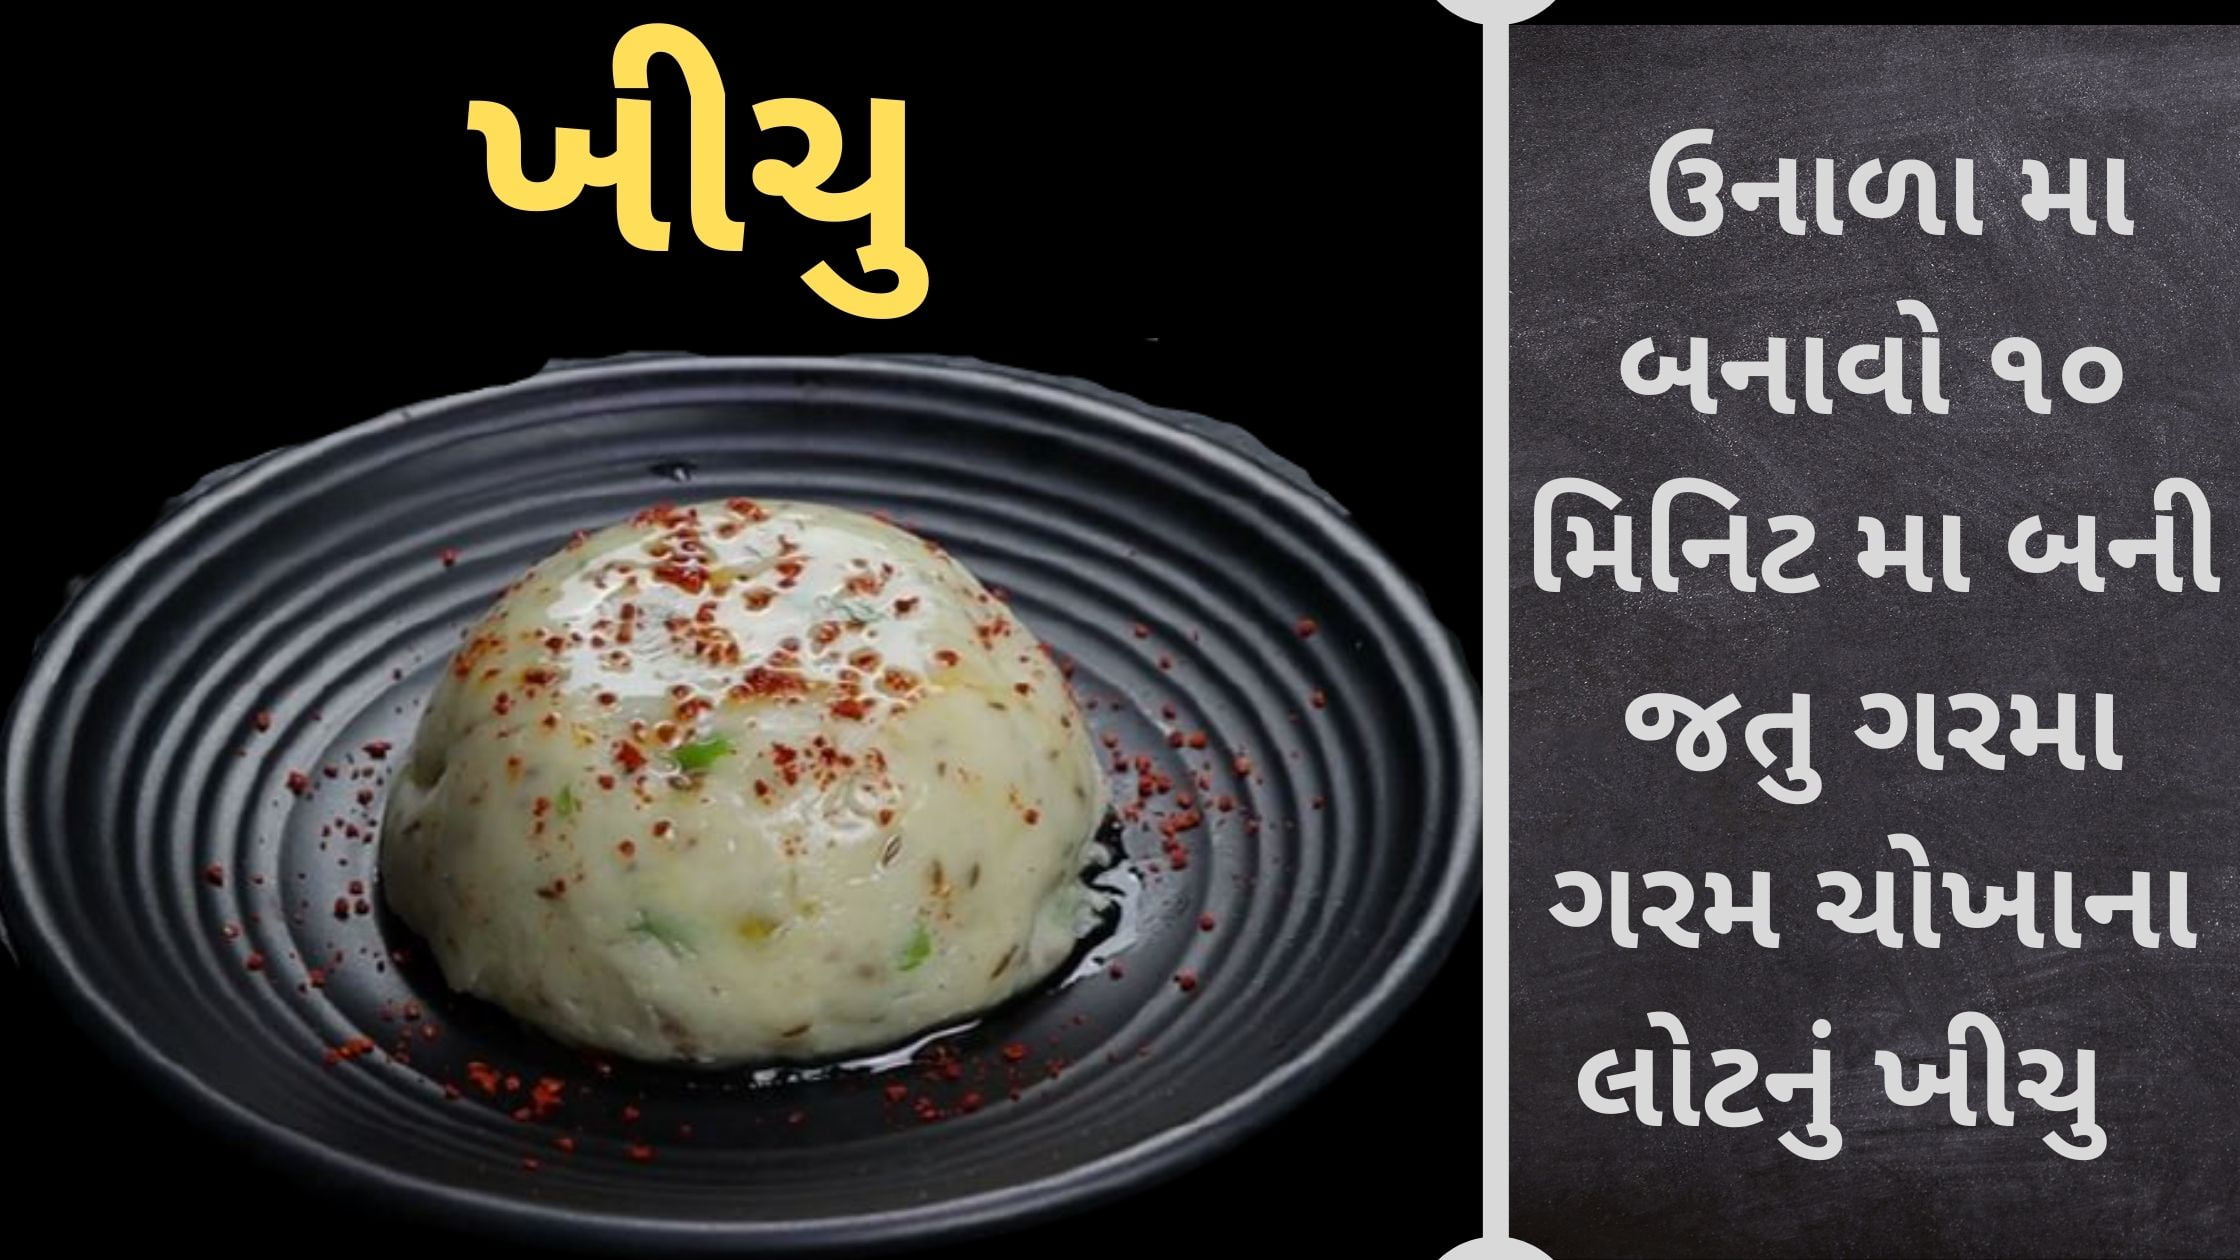 khichu recipe in gujarati language